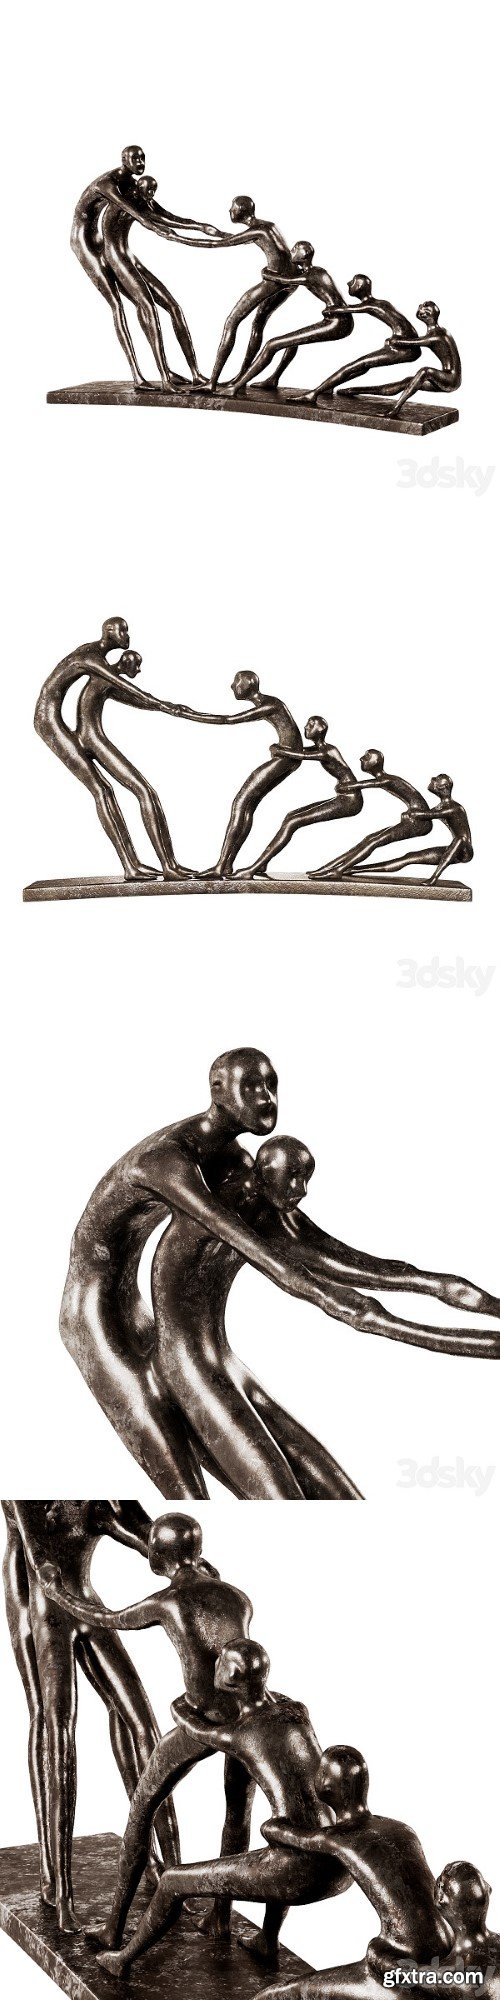 WAYFAIR bronze statuette War Human